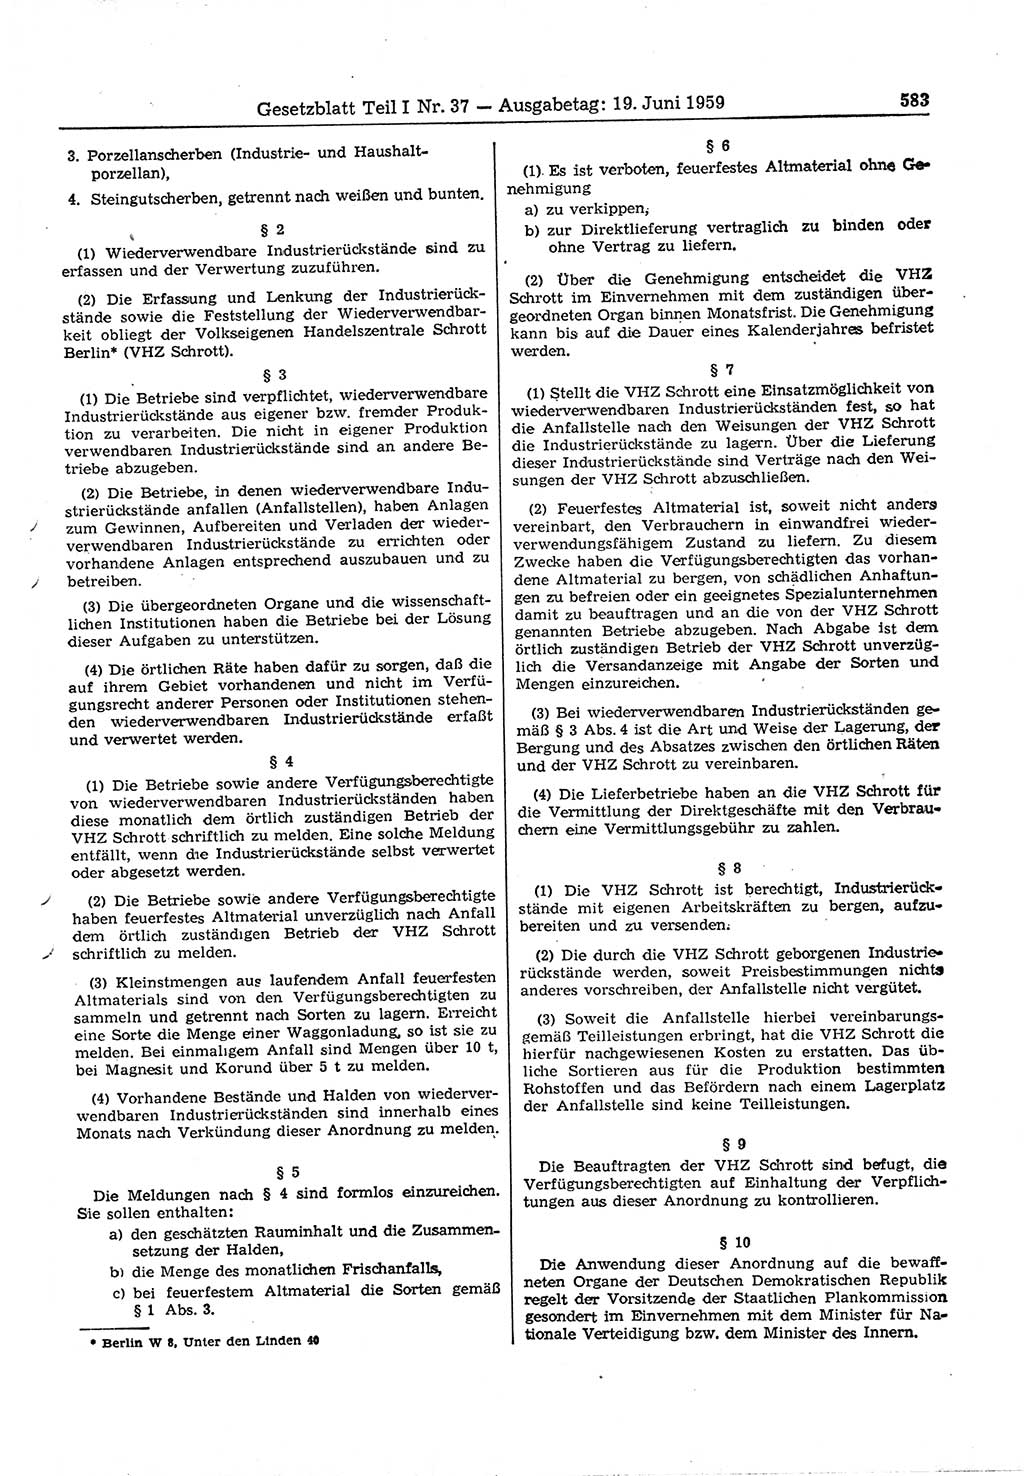 Gesetzblatt (GBl.) der Deutschen Demokratischen Republik (DDR) Teil Ⅰ 1959, Seite 583 (GBl. DDR Ⅰ 1959, S. 583)